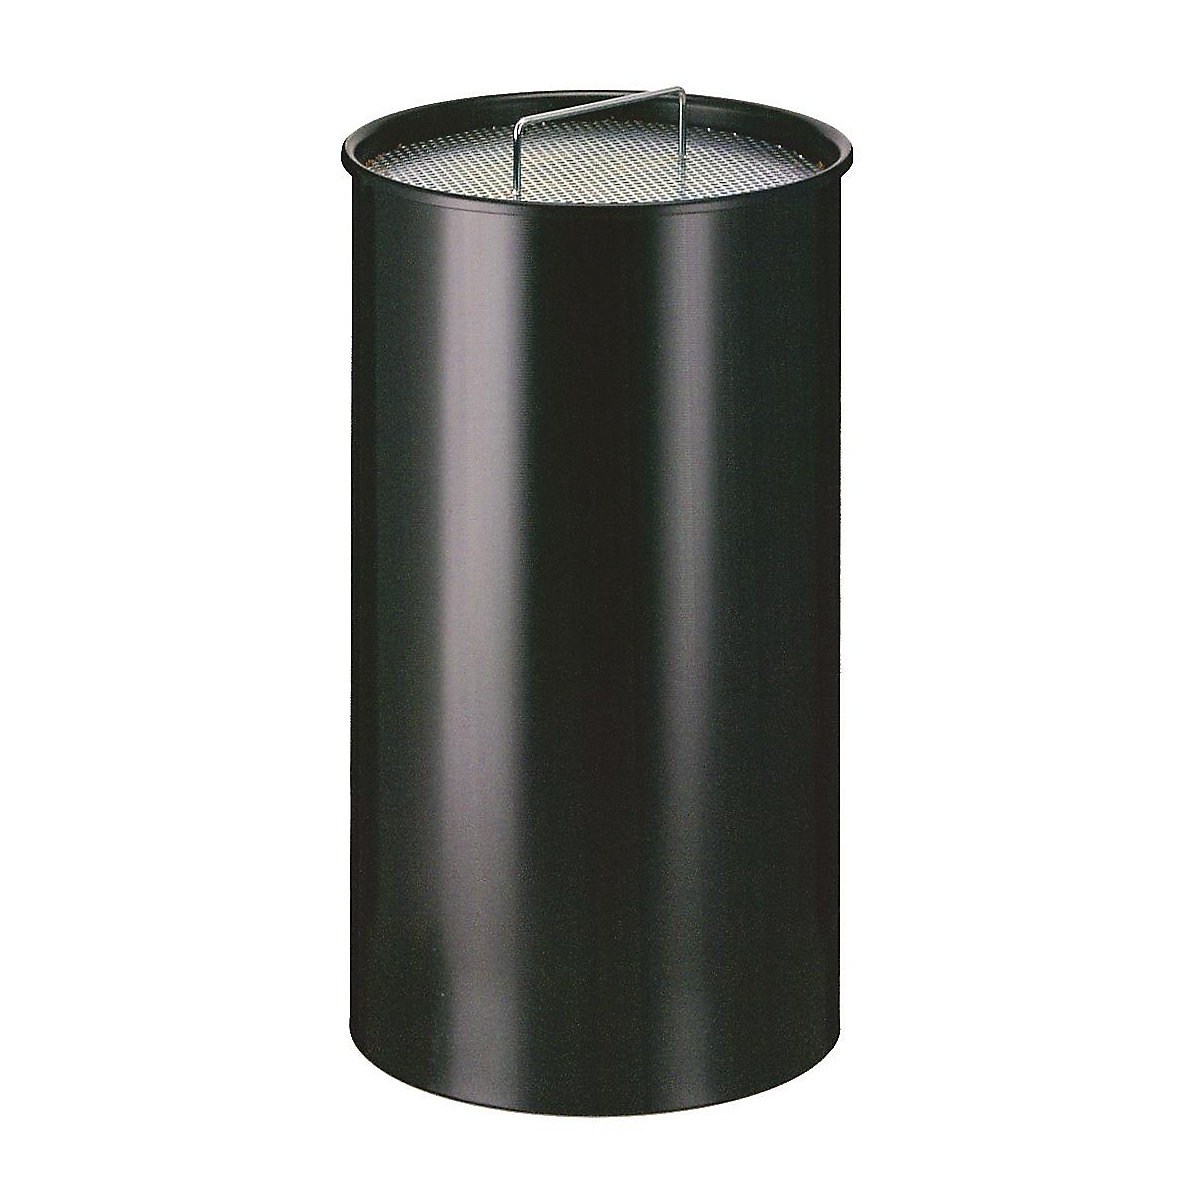 Stojeća pepeljara s pijeskom, okrugla izvedba, sa sitom, u crnoj boji-3